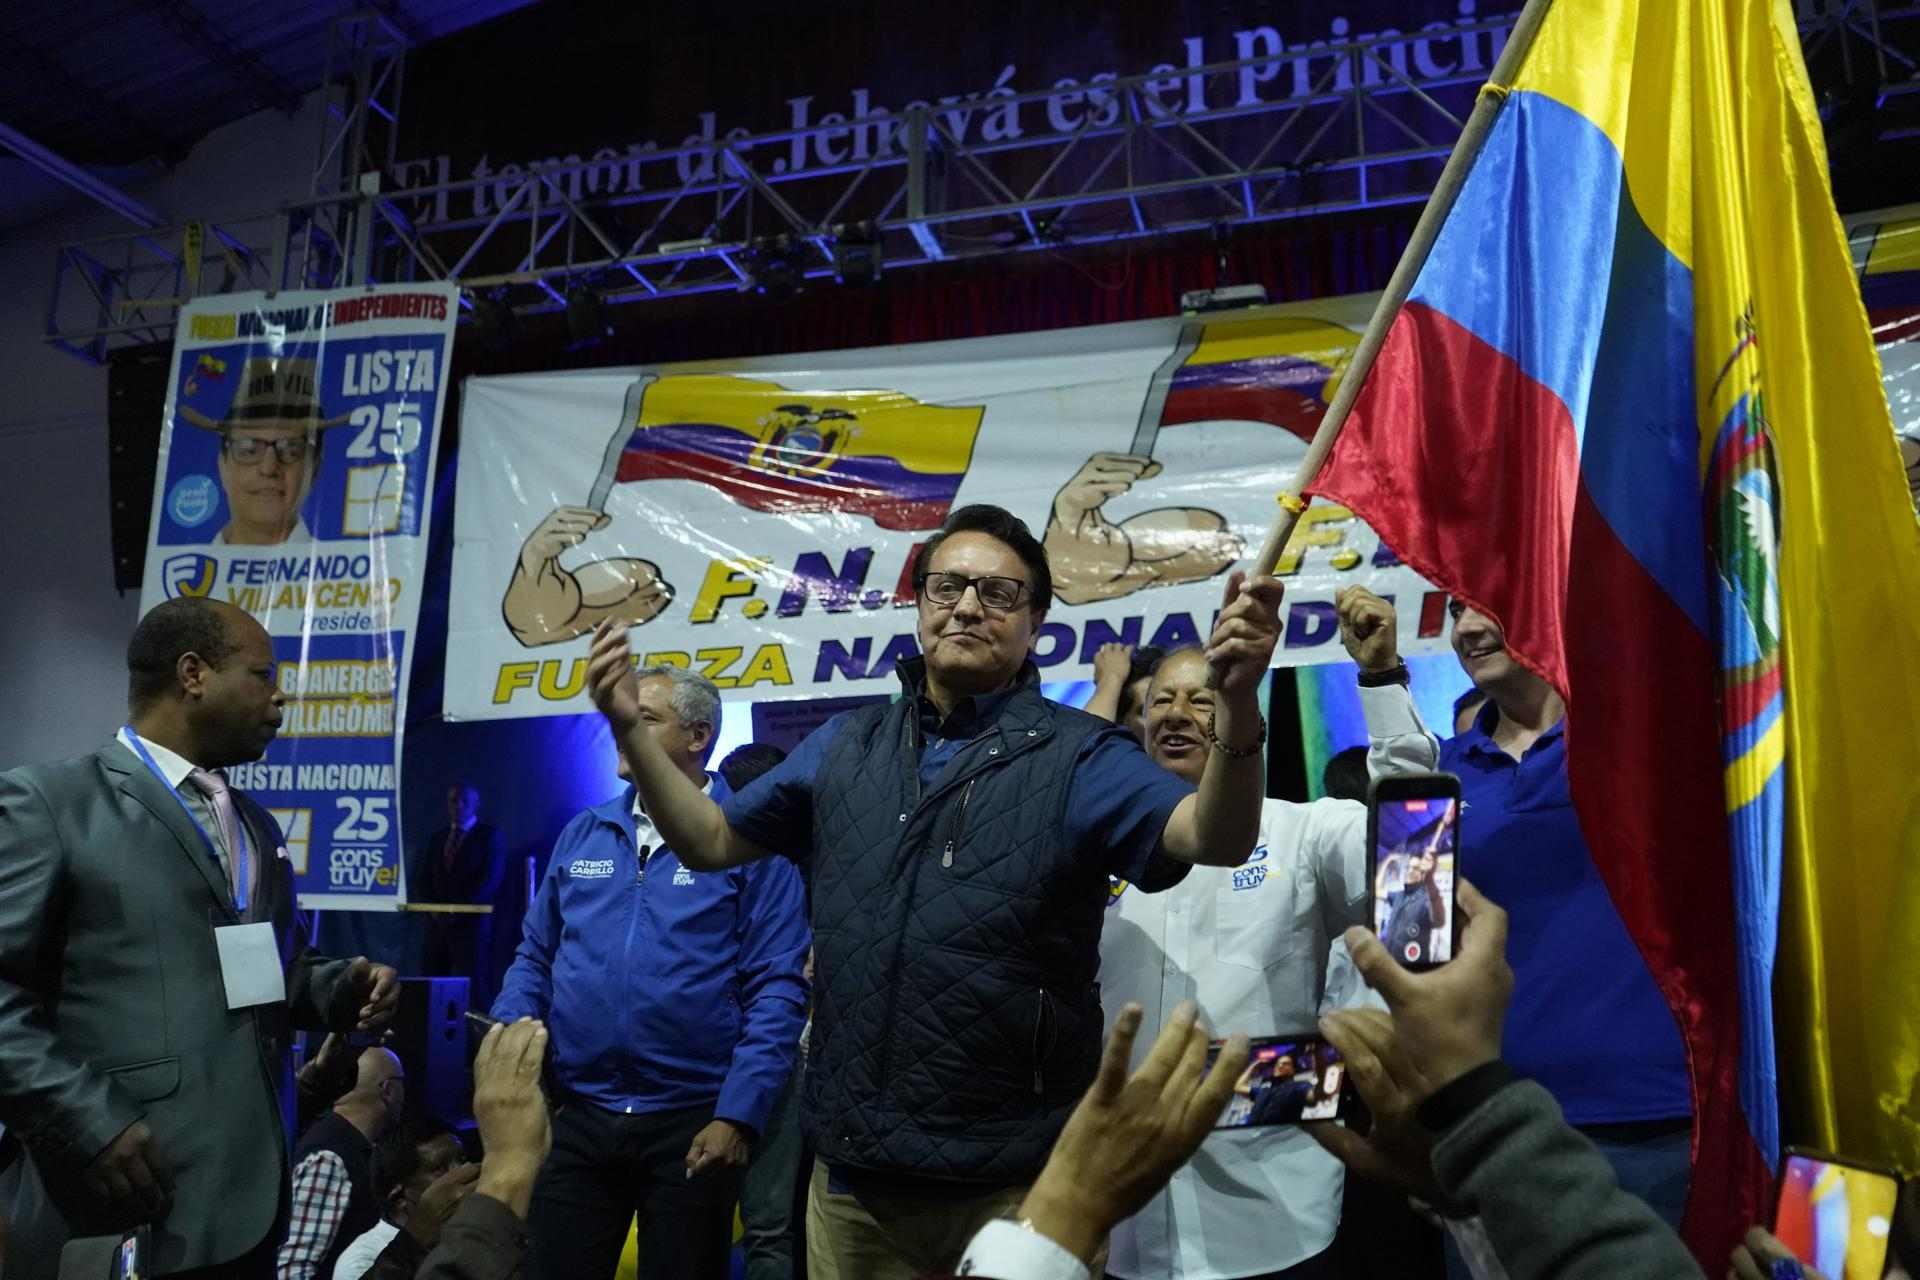 ¿Quién era Fernando Villavicencio, el candidato presidencial asesinado en Ecuador?